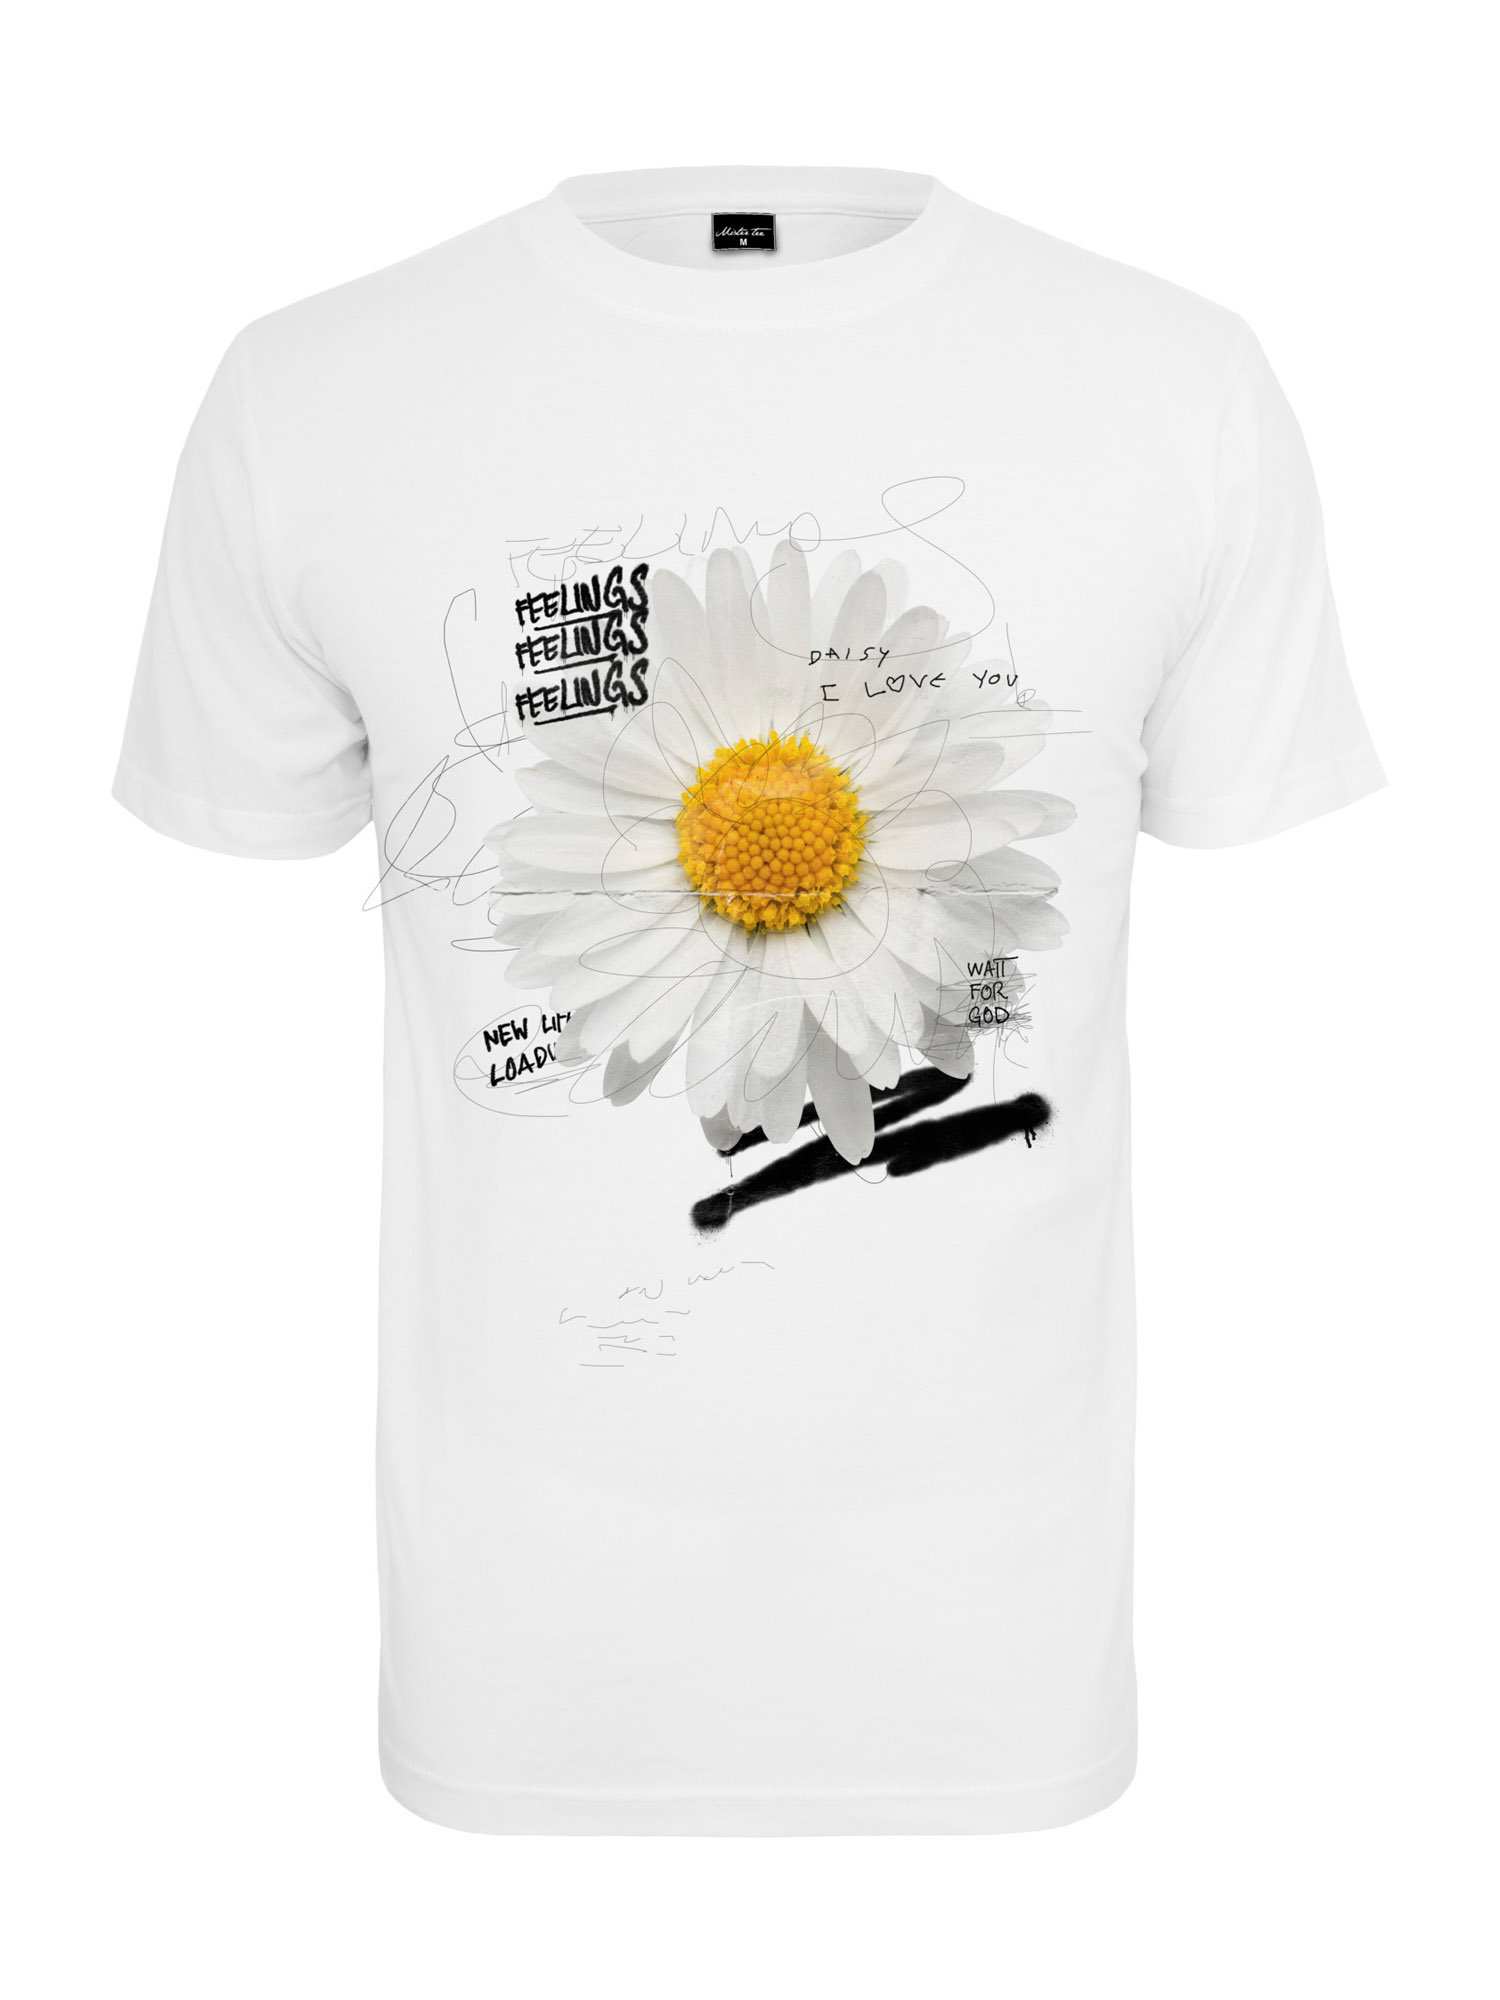 VO6jz Odzież Mister Tee Koszulka Daisy Feelings w kolorze Białym 